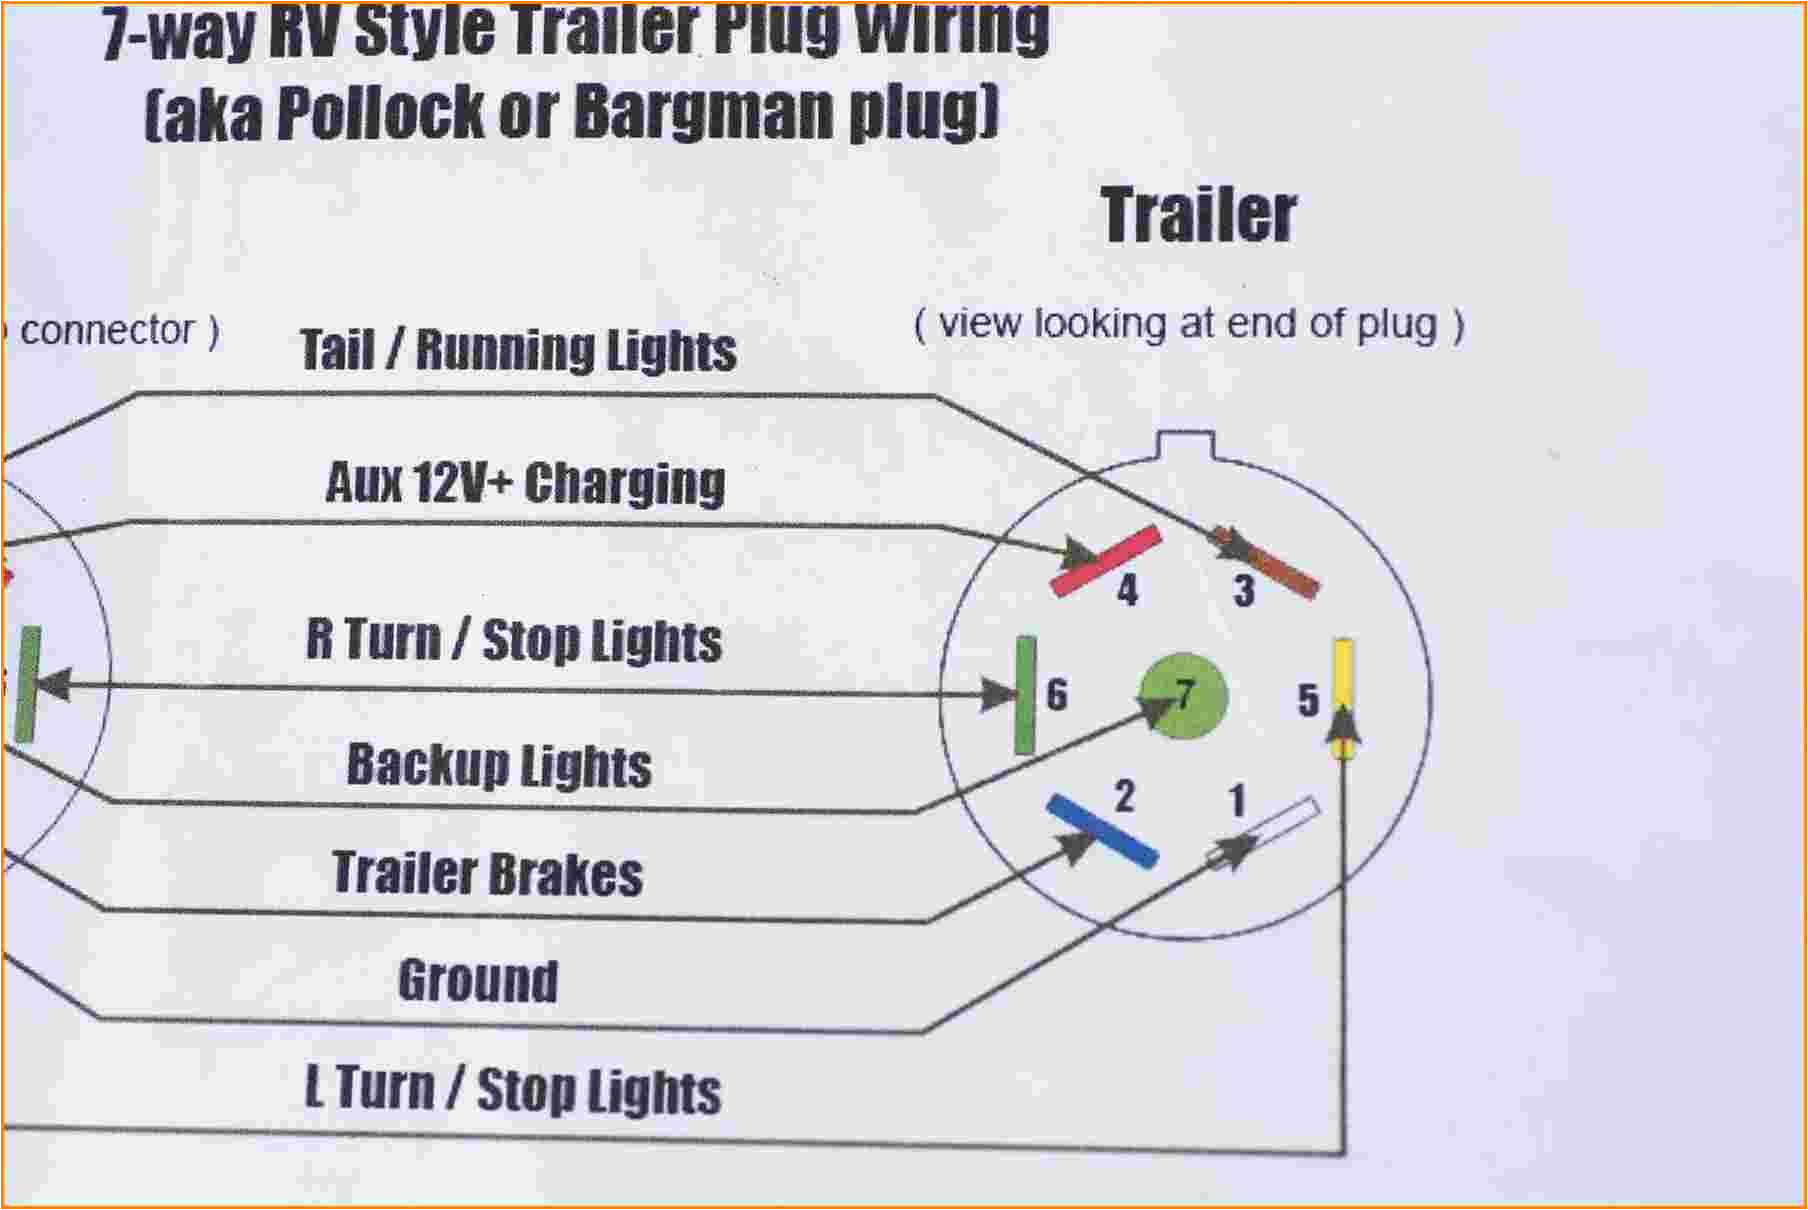 norbert trailer wiring diagram wiring diagram view norbert trailer wiring diagram 4 pin trailer harness schematic